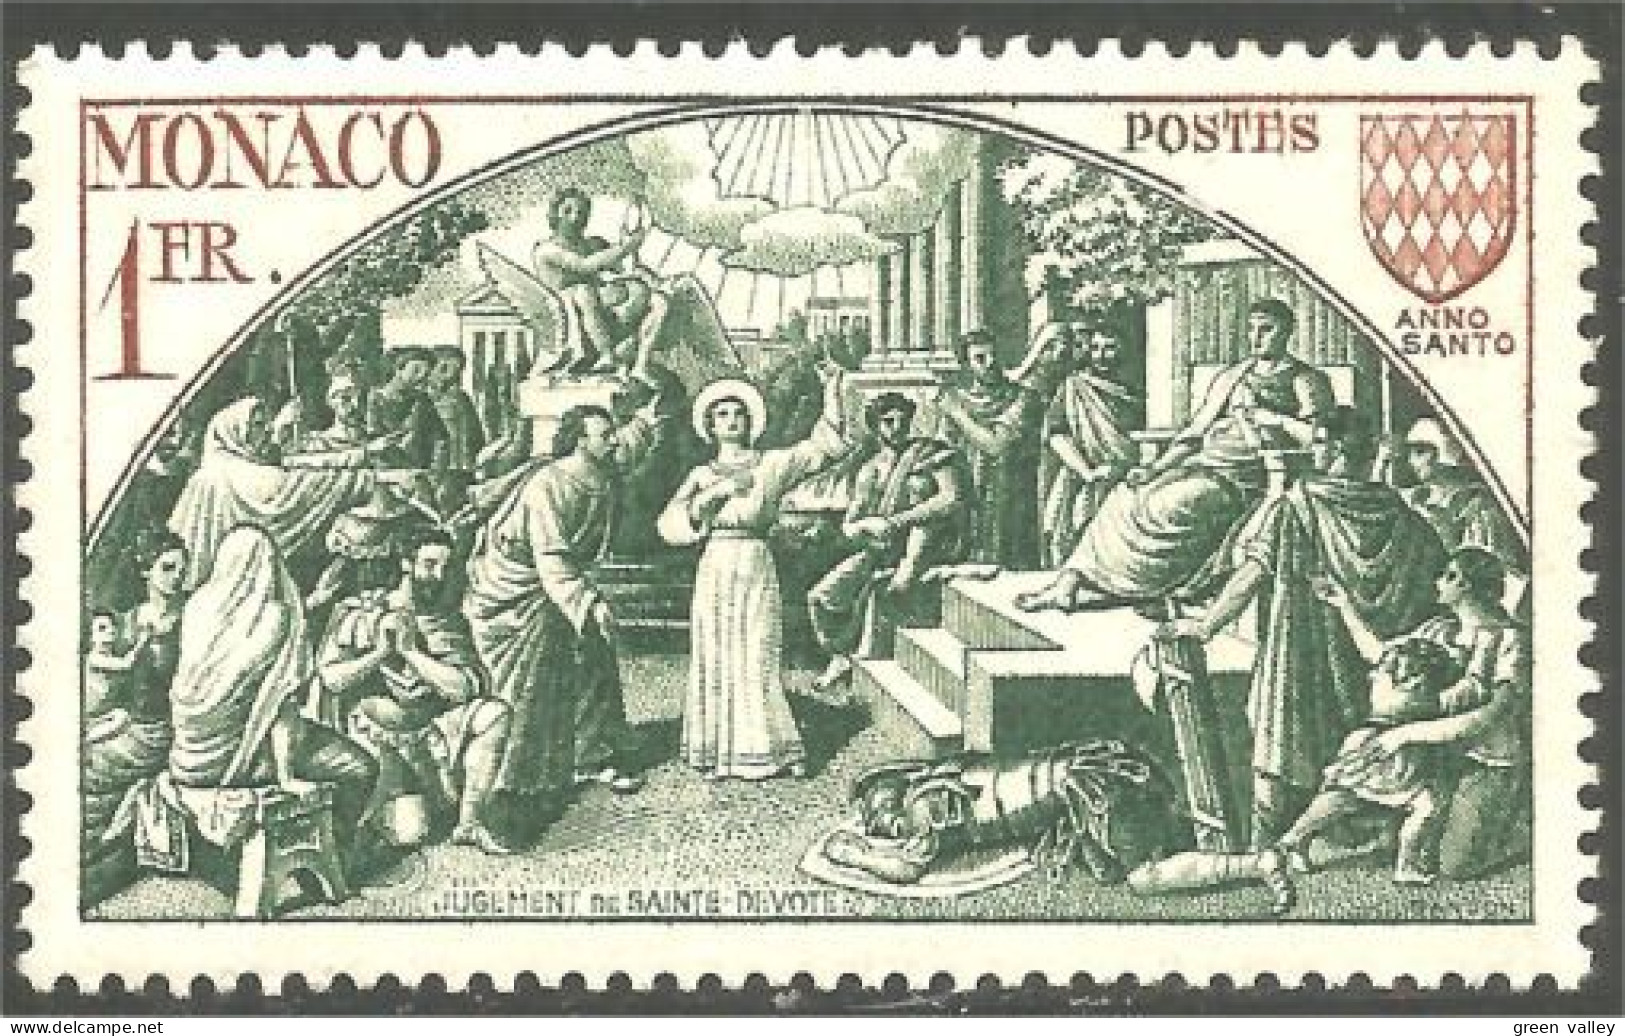 630x Monaco 1951 Année Sainte Holy Year Jugement Dévolte Judgment MH * Neuf (MON-907) - Cristianismo